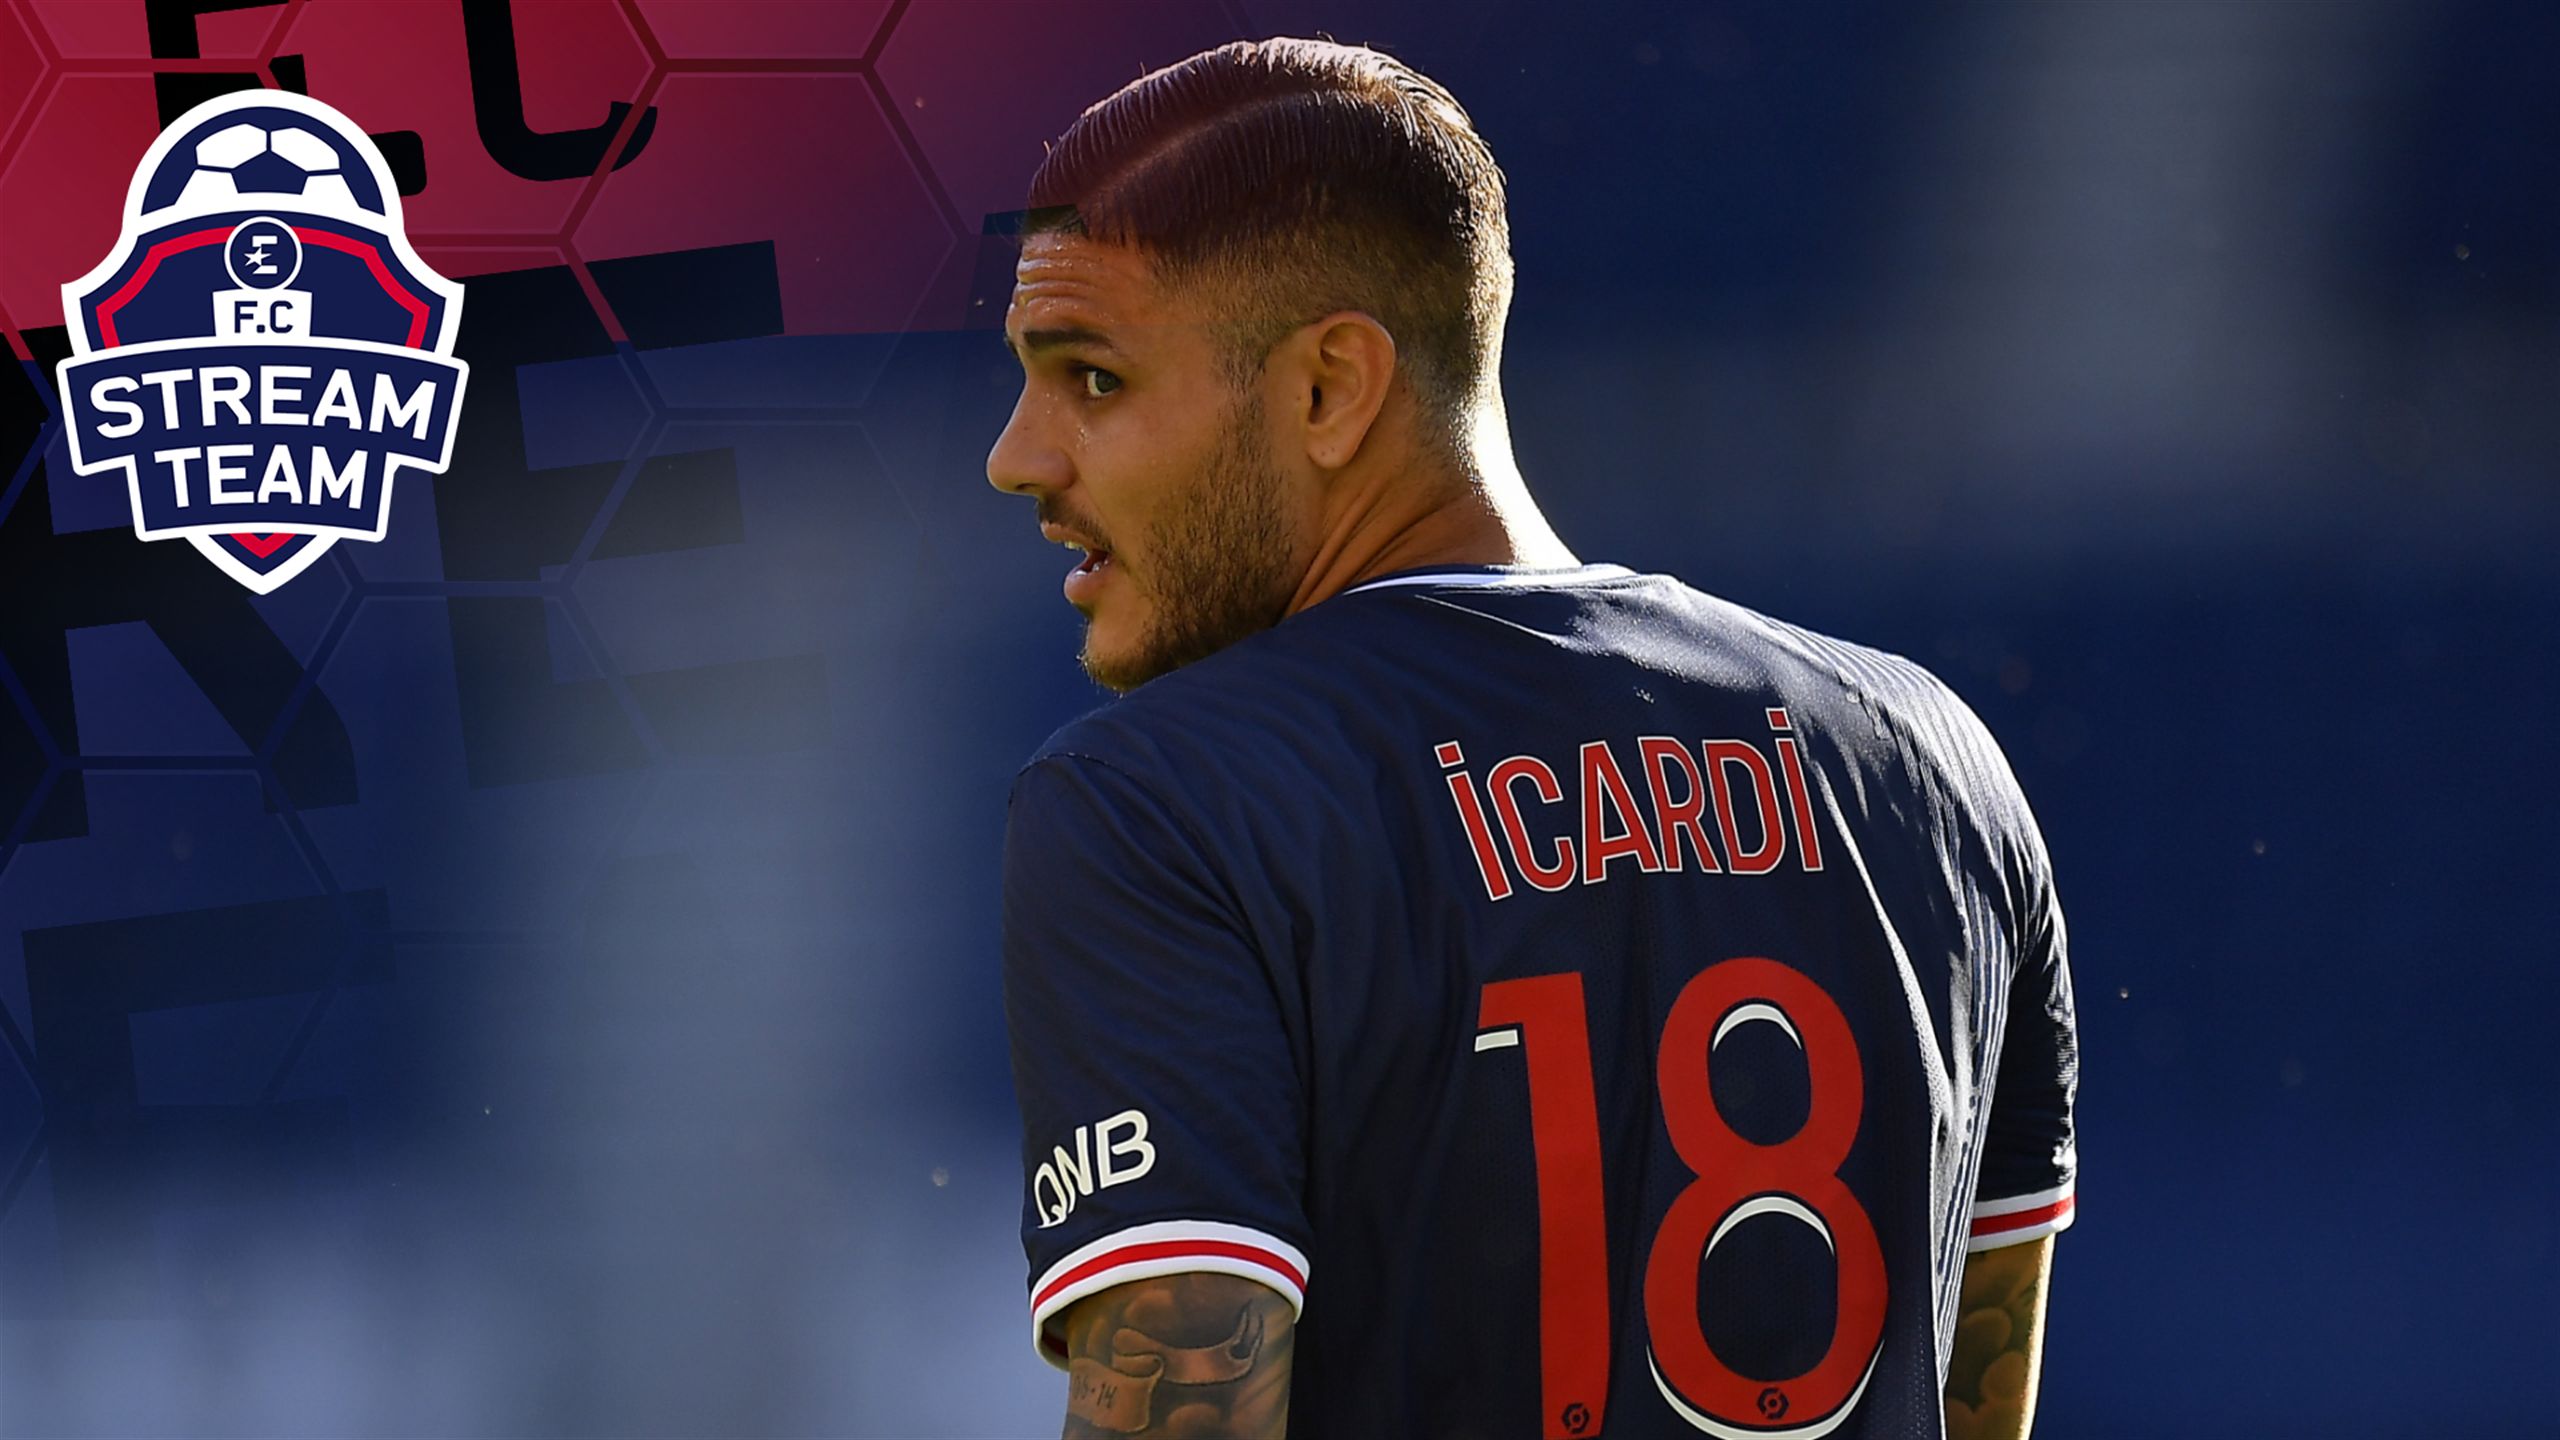 VIDEO - FC Stream Team : Icardi, boulet du PSG en 2020, doit-il conserver  la confiance de Tuchel ? - Vidéo Football - Eurosport